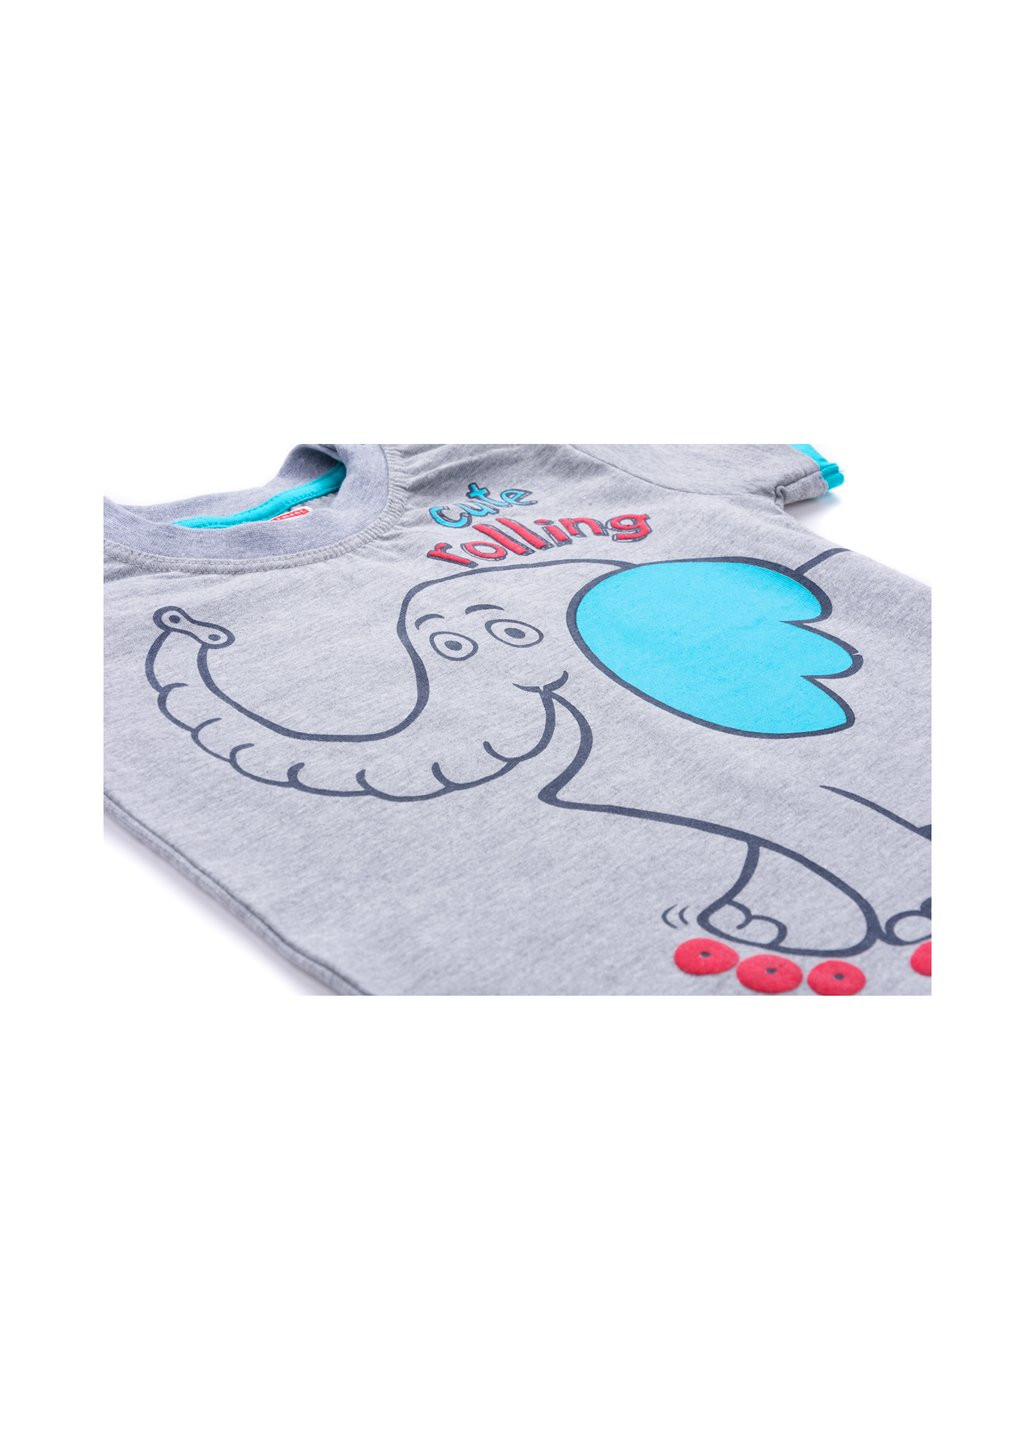 Голубой летний набор детской одежды со слоником (6199-110b-blue) Breeze